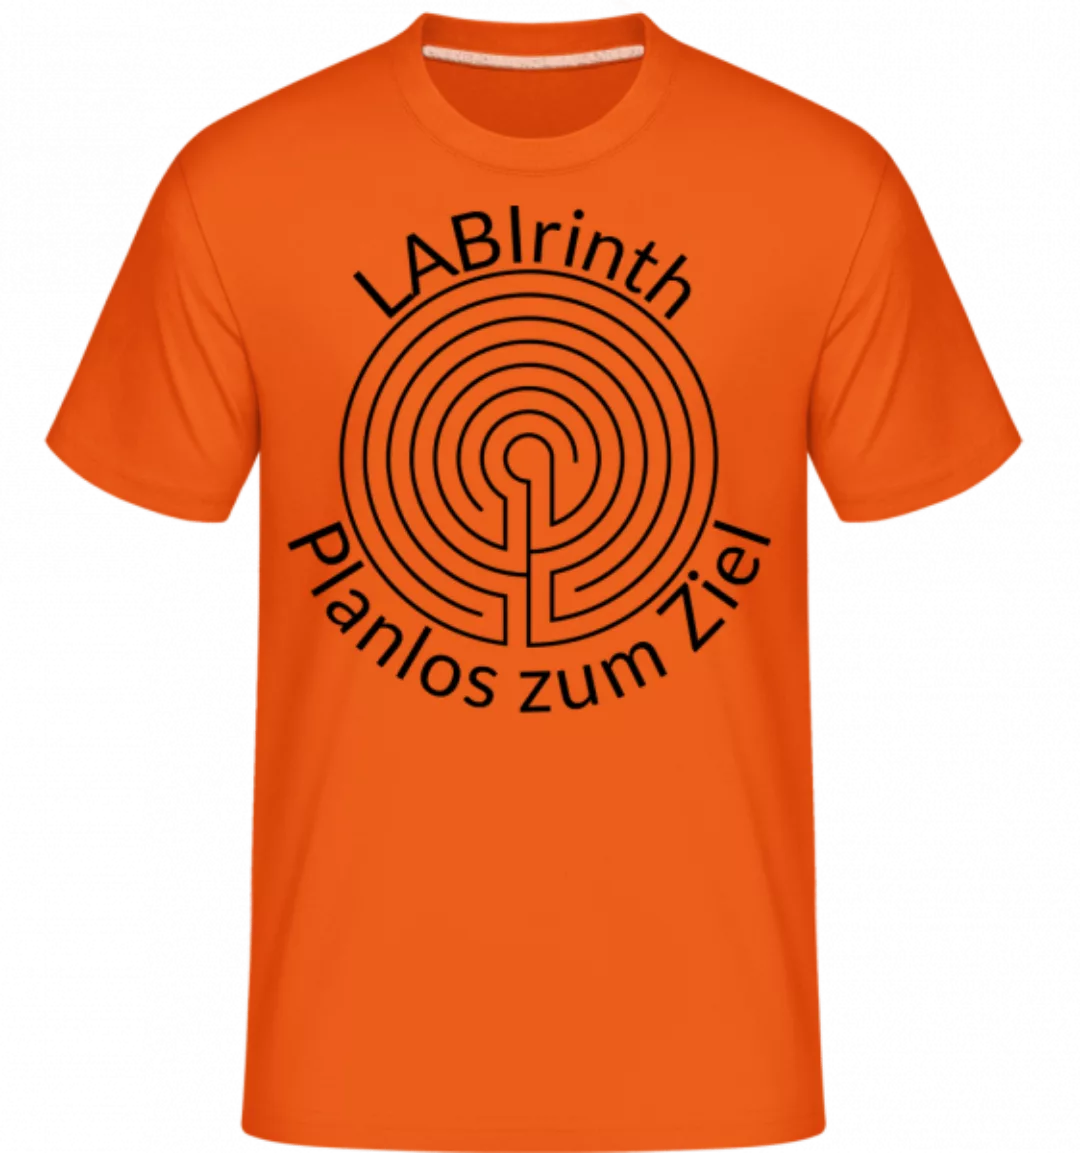 LABIrinth Planlos Zum Ziel · Shirtinator Männer T-Shirt günstig online kaufen